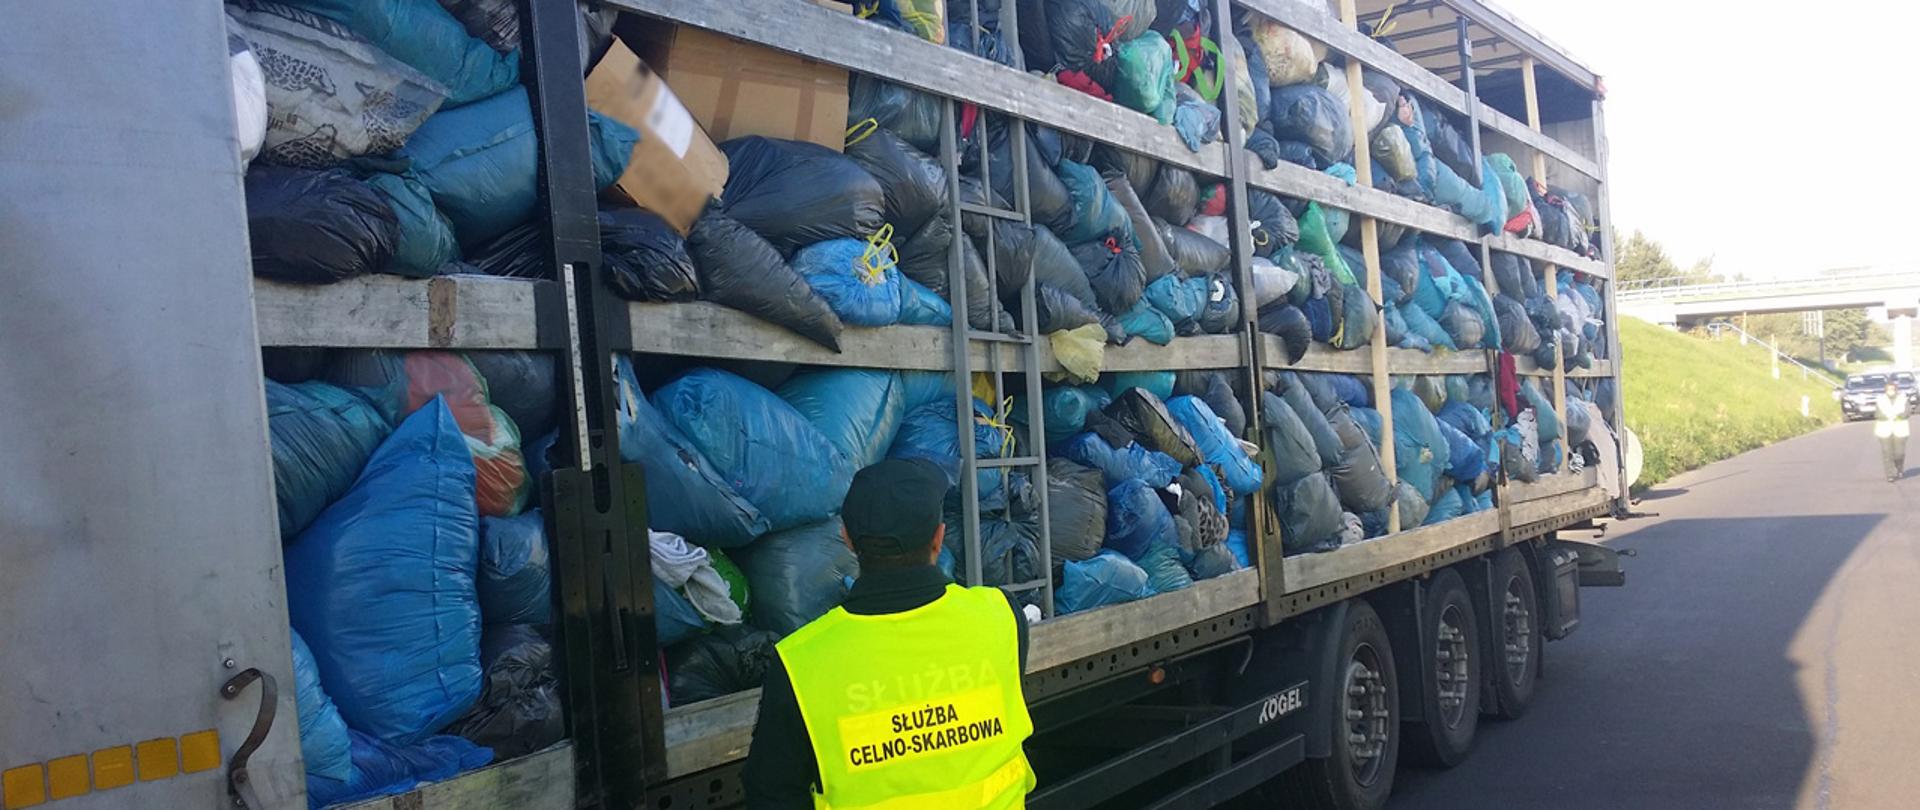 Funkcjonariusz Służby Celno-Skarbowej przy naczepie samochodu ciężarowego, naczepa załadowana jest workami z odpadami.